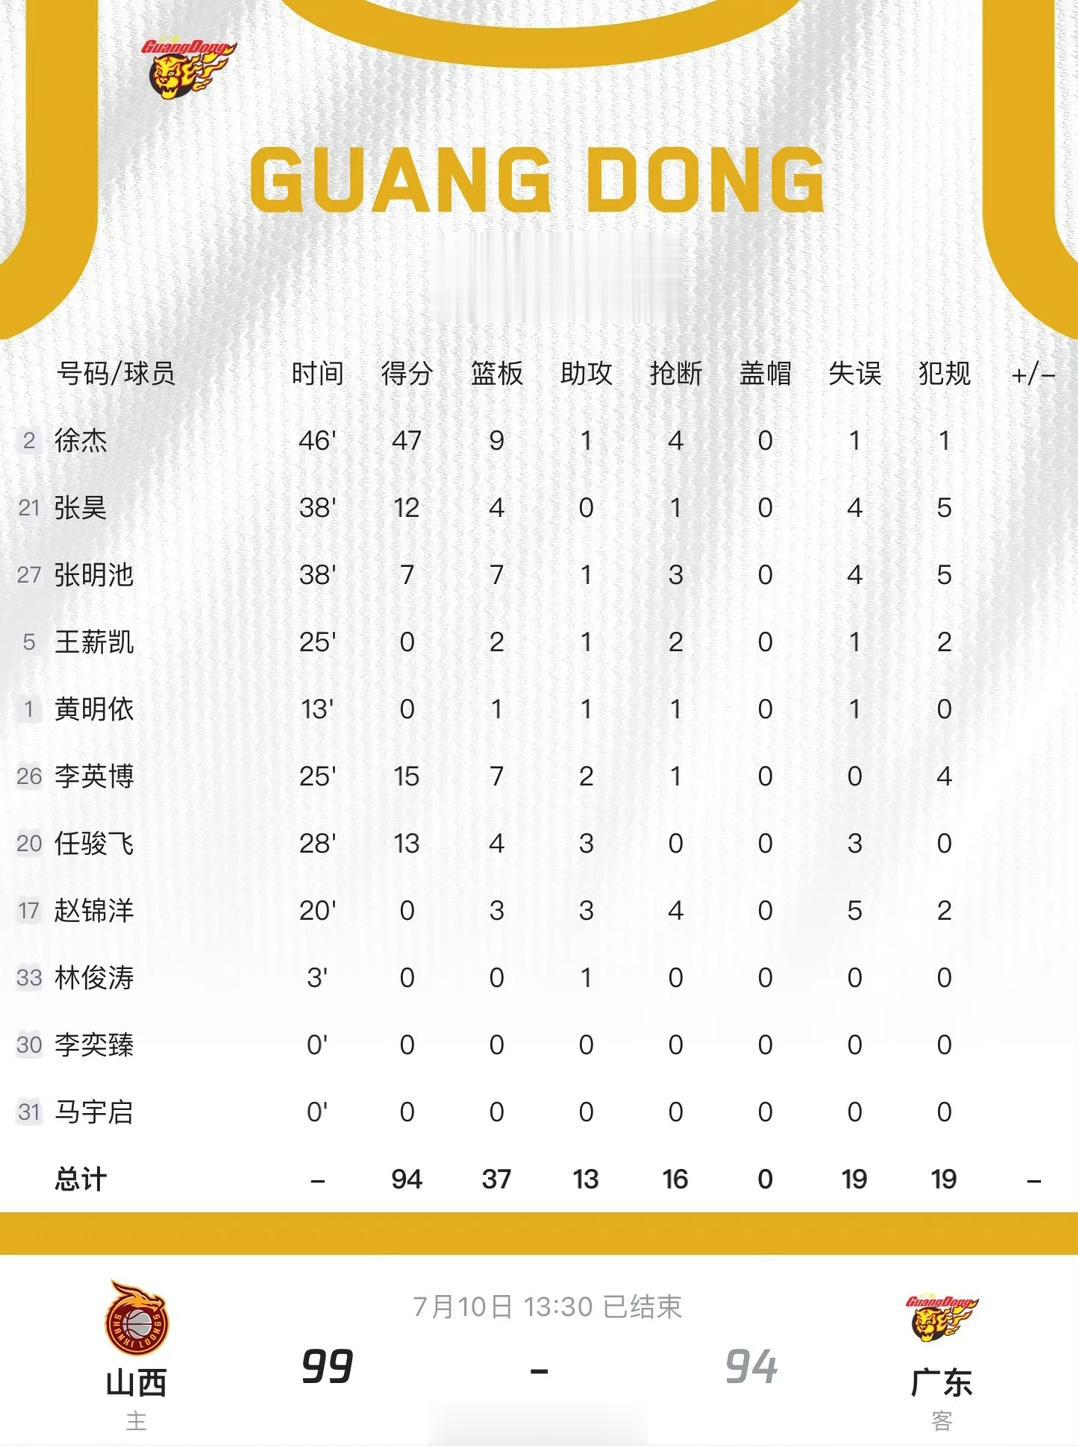  首战，广东94比99不敌山西。“青年队球霸” 徐杰全场三分15投9中砍下47分